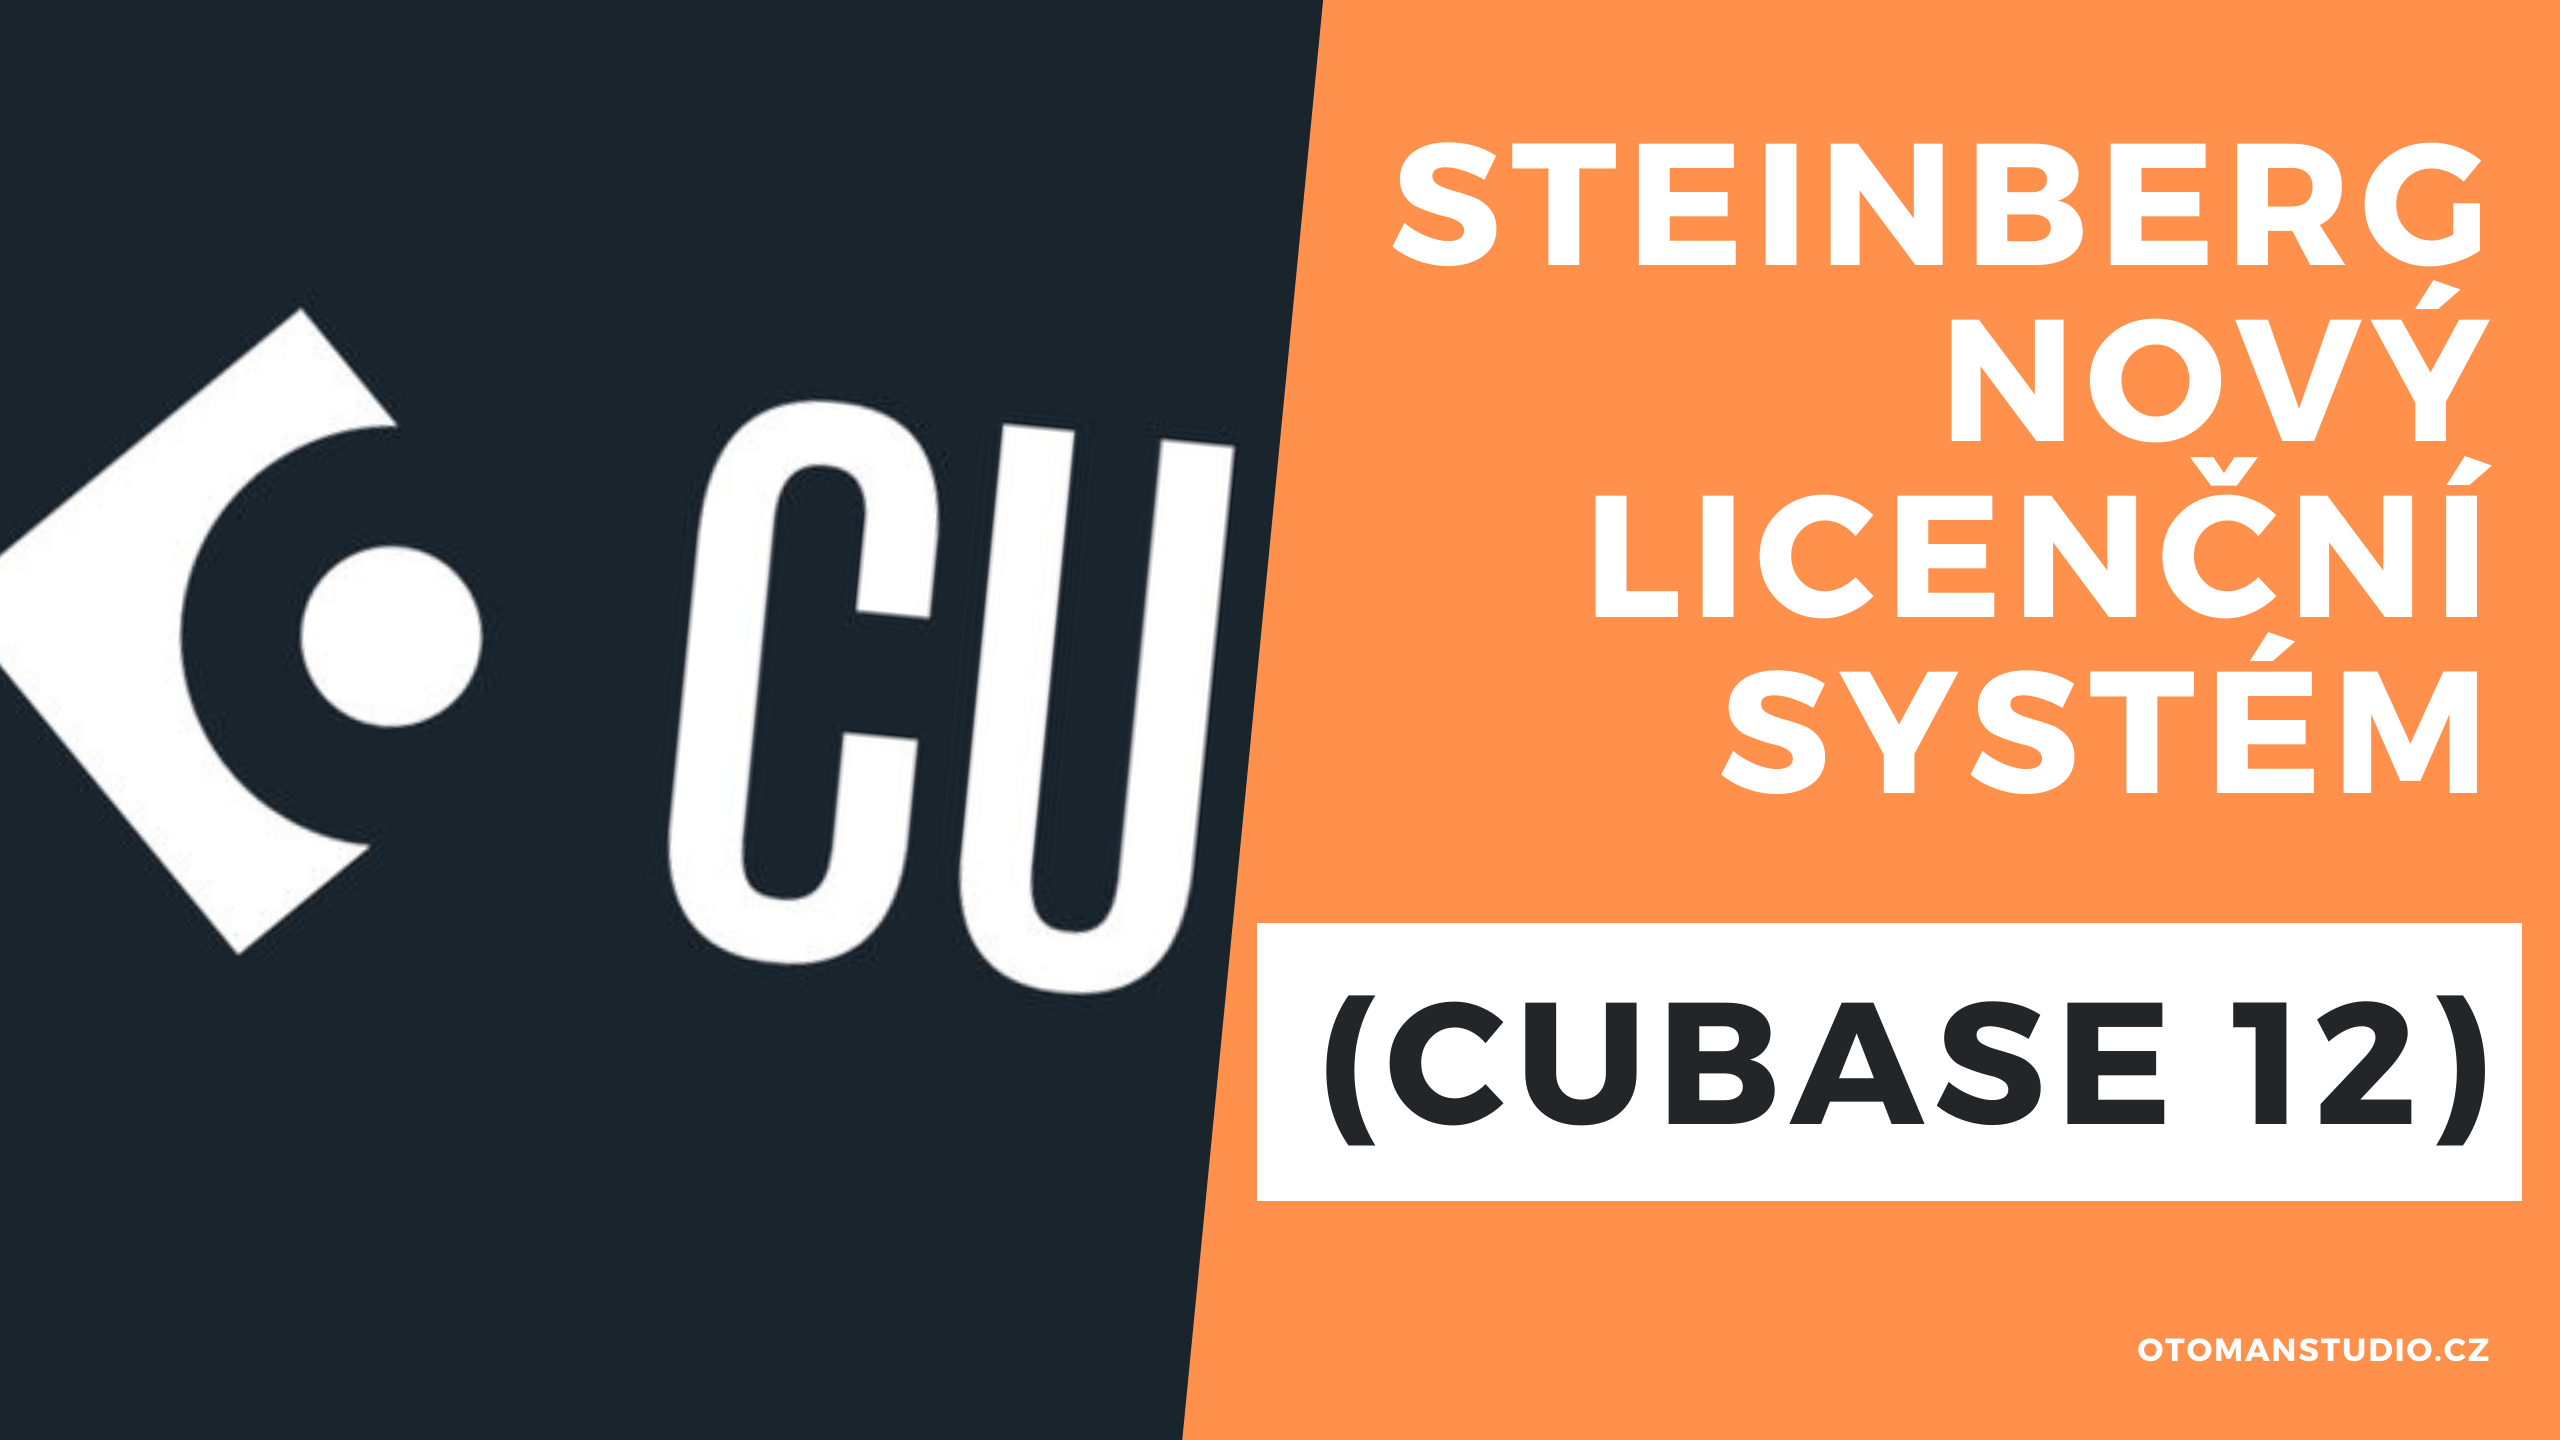 Steinberg NOVÝ Licenční Systém (Cubase 12)